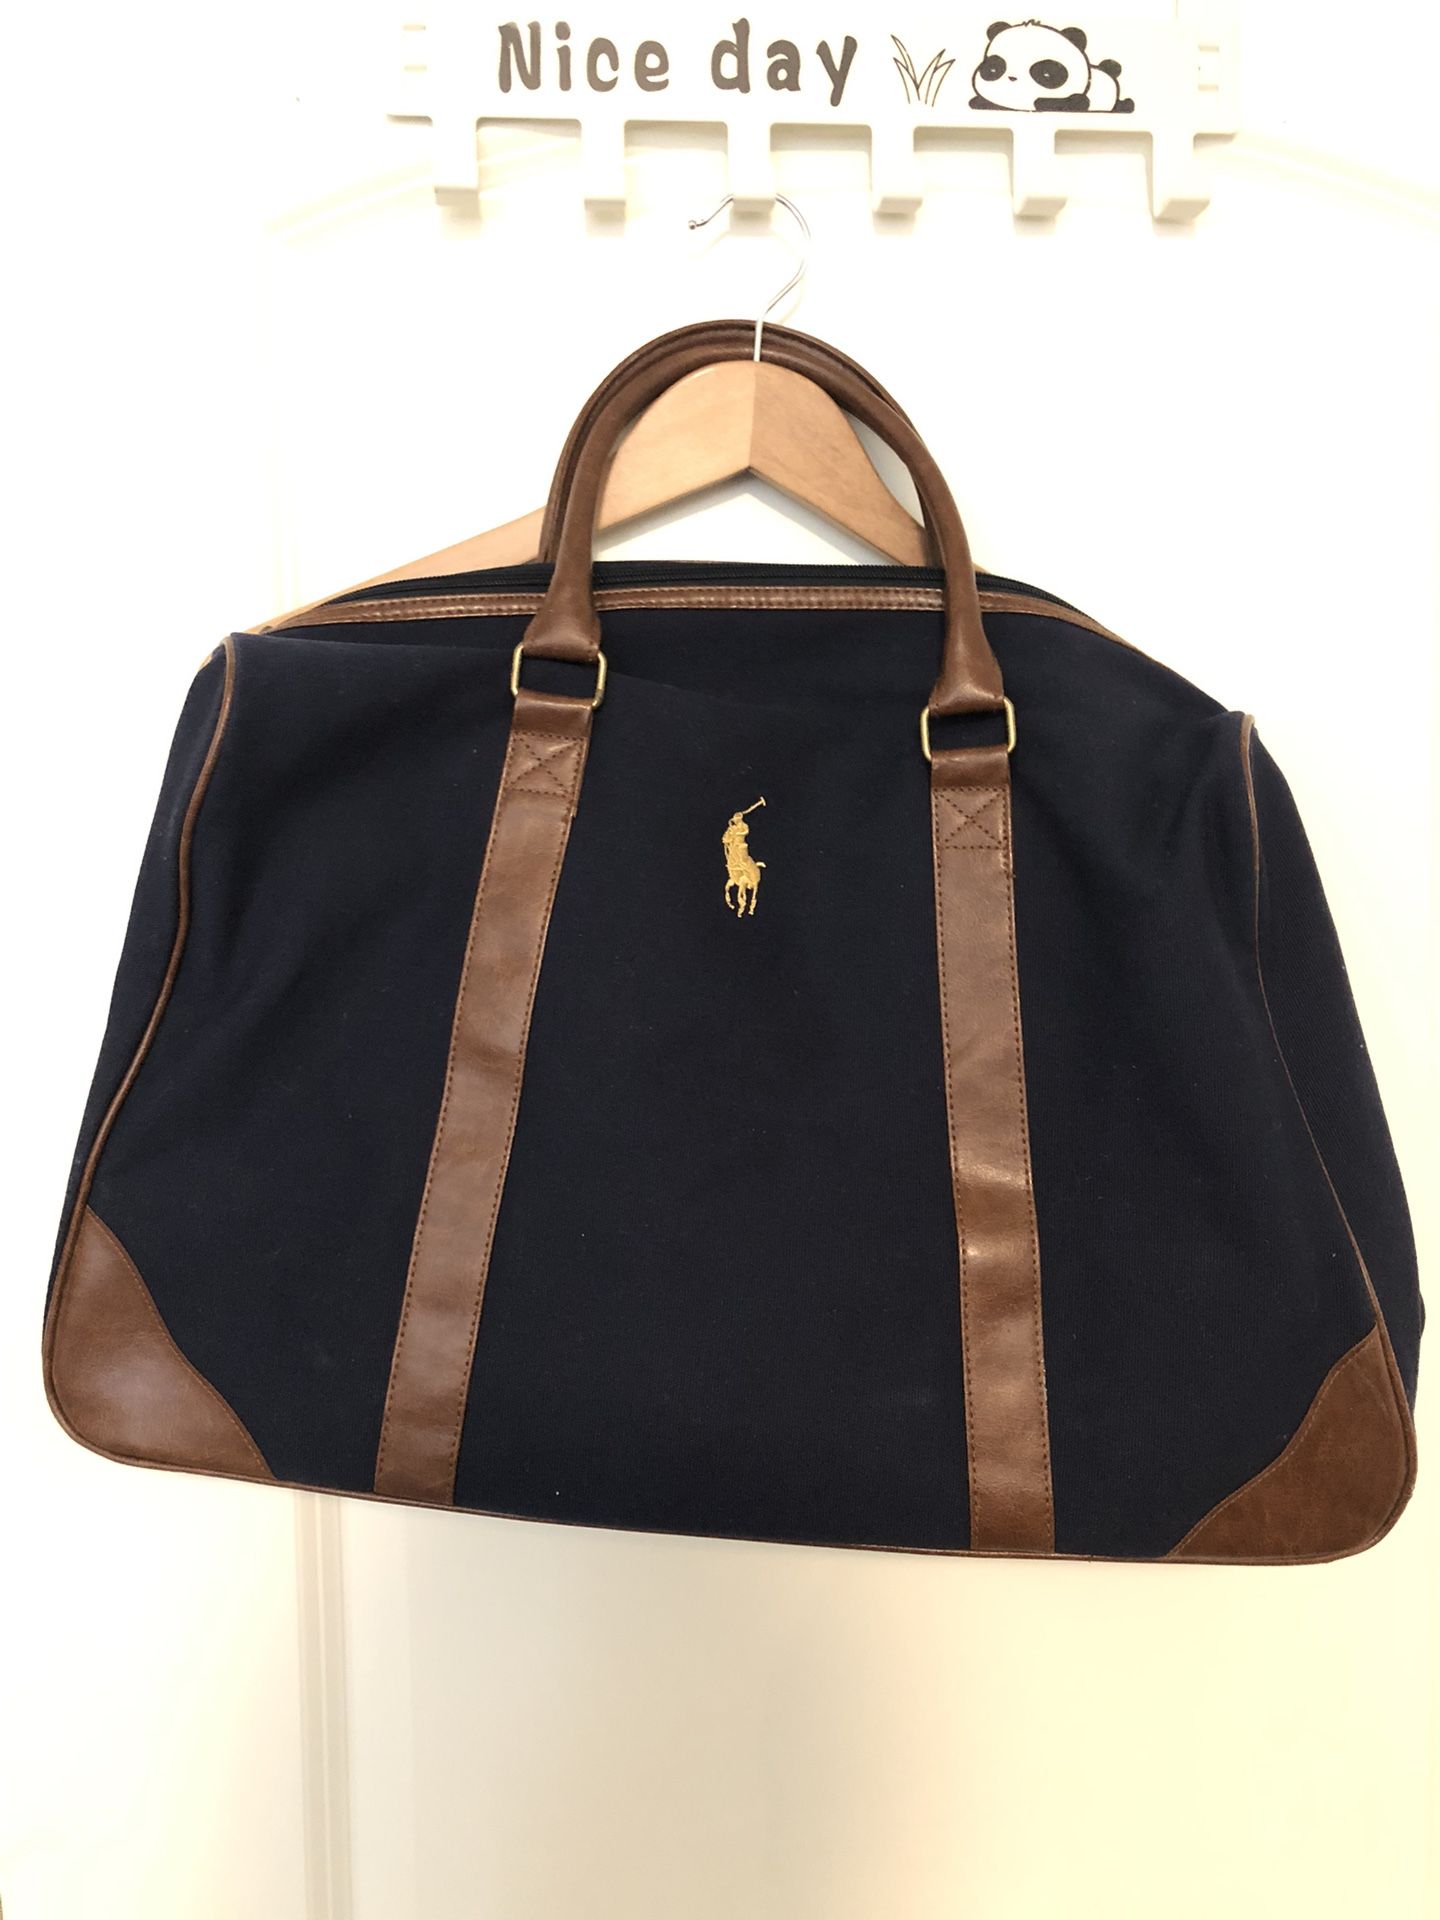 Authentic Ralph Lauren Messenger Bag For Men And Women